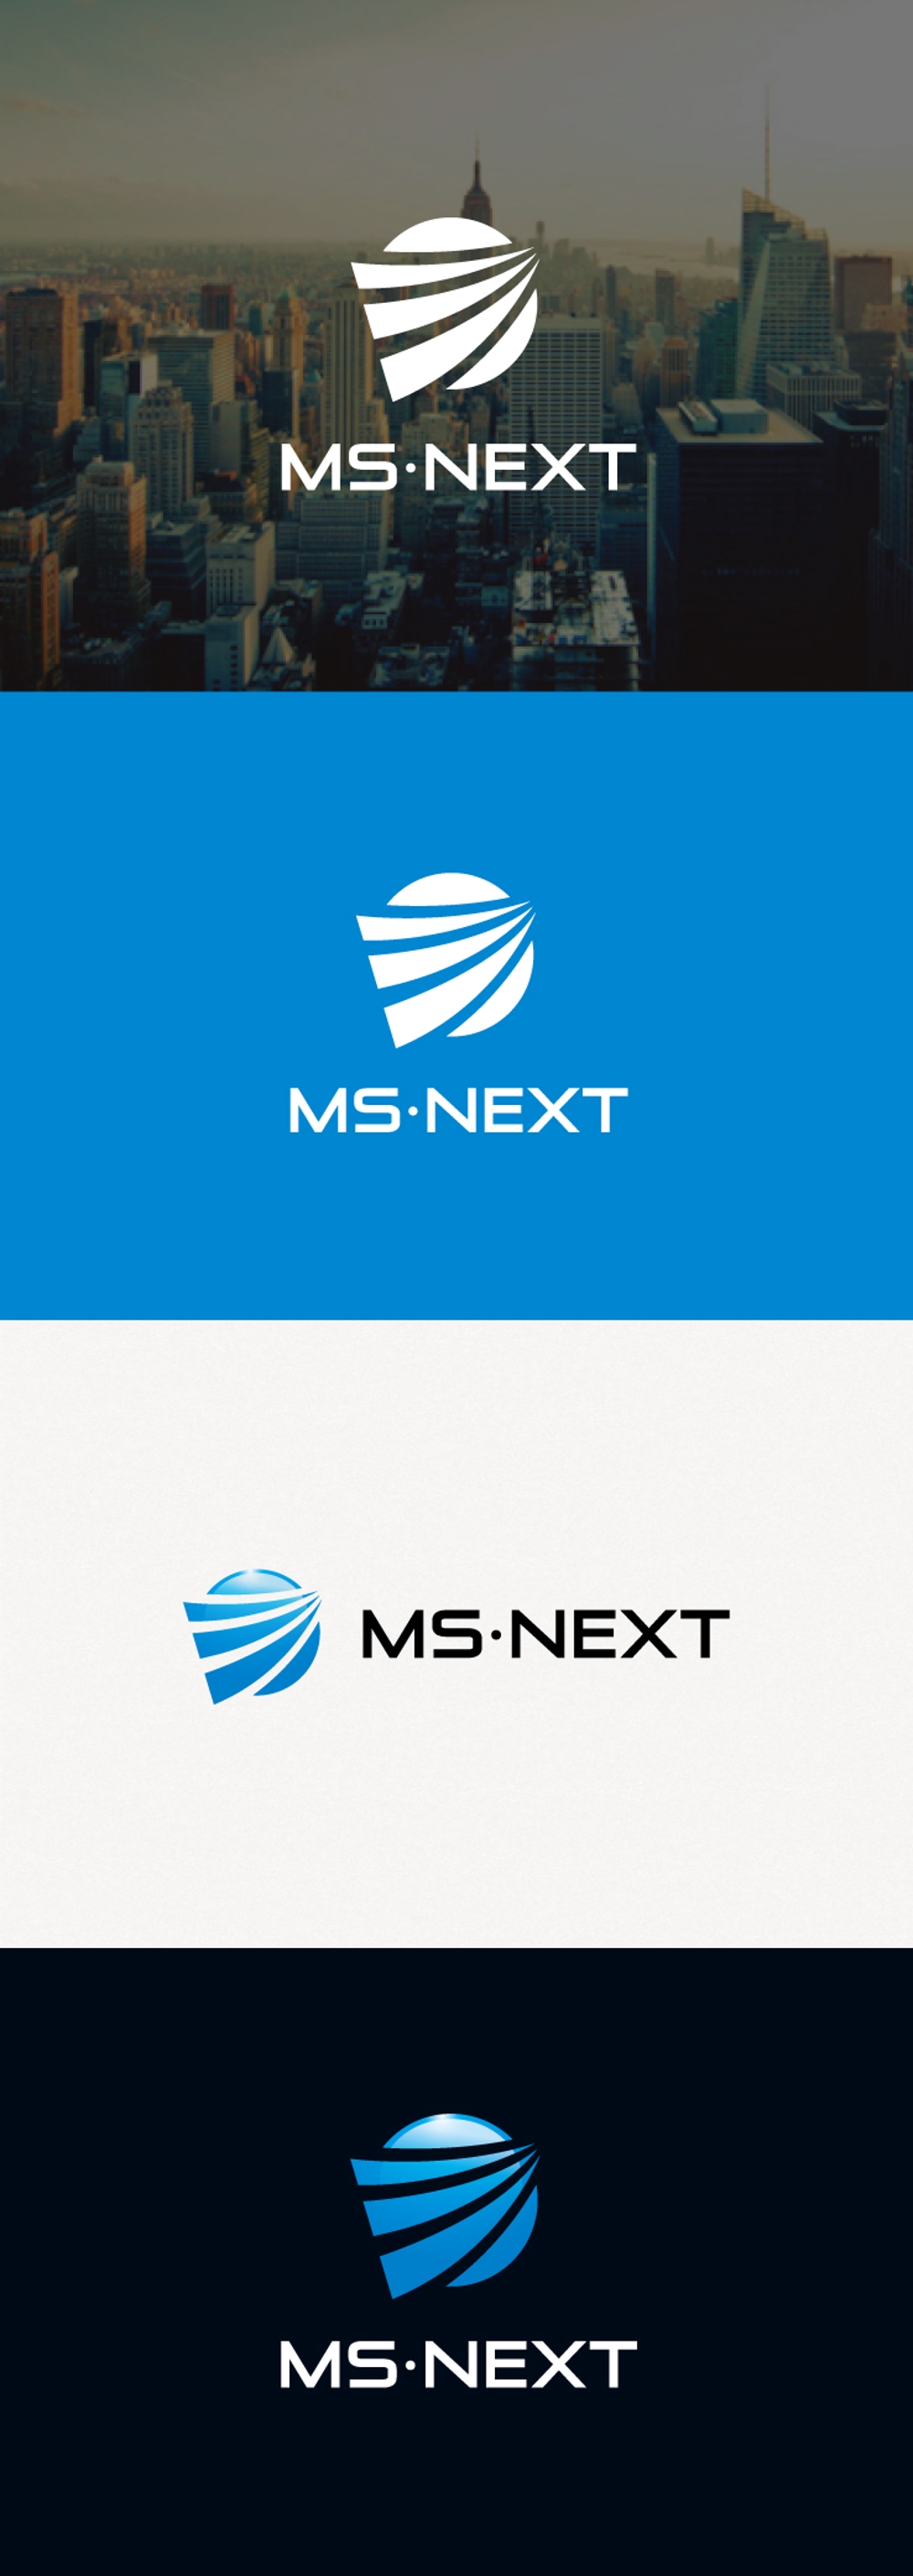 警備会社「株式会社MS・NEXT」のロゴマークとロゴタイプ